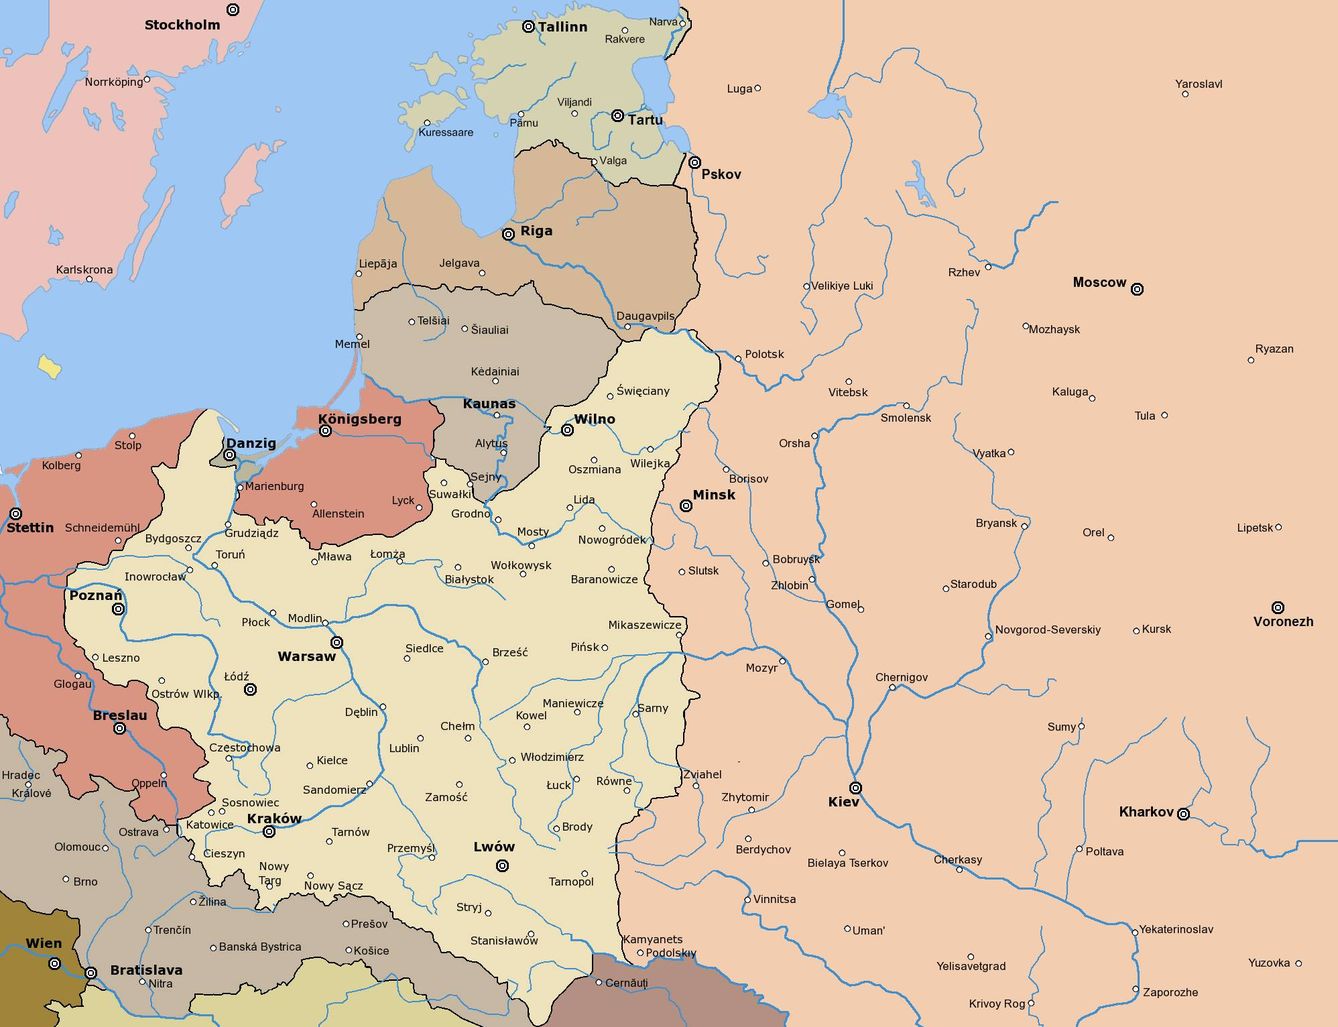 Mapa con las fronteras del tratado de Riga de 1921-22.